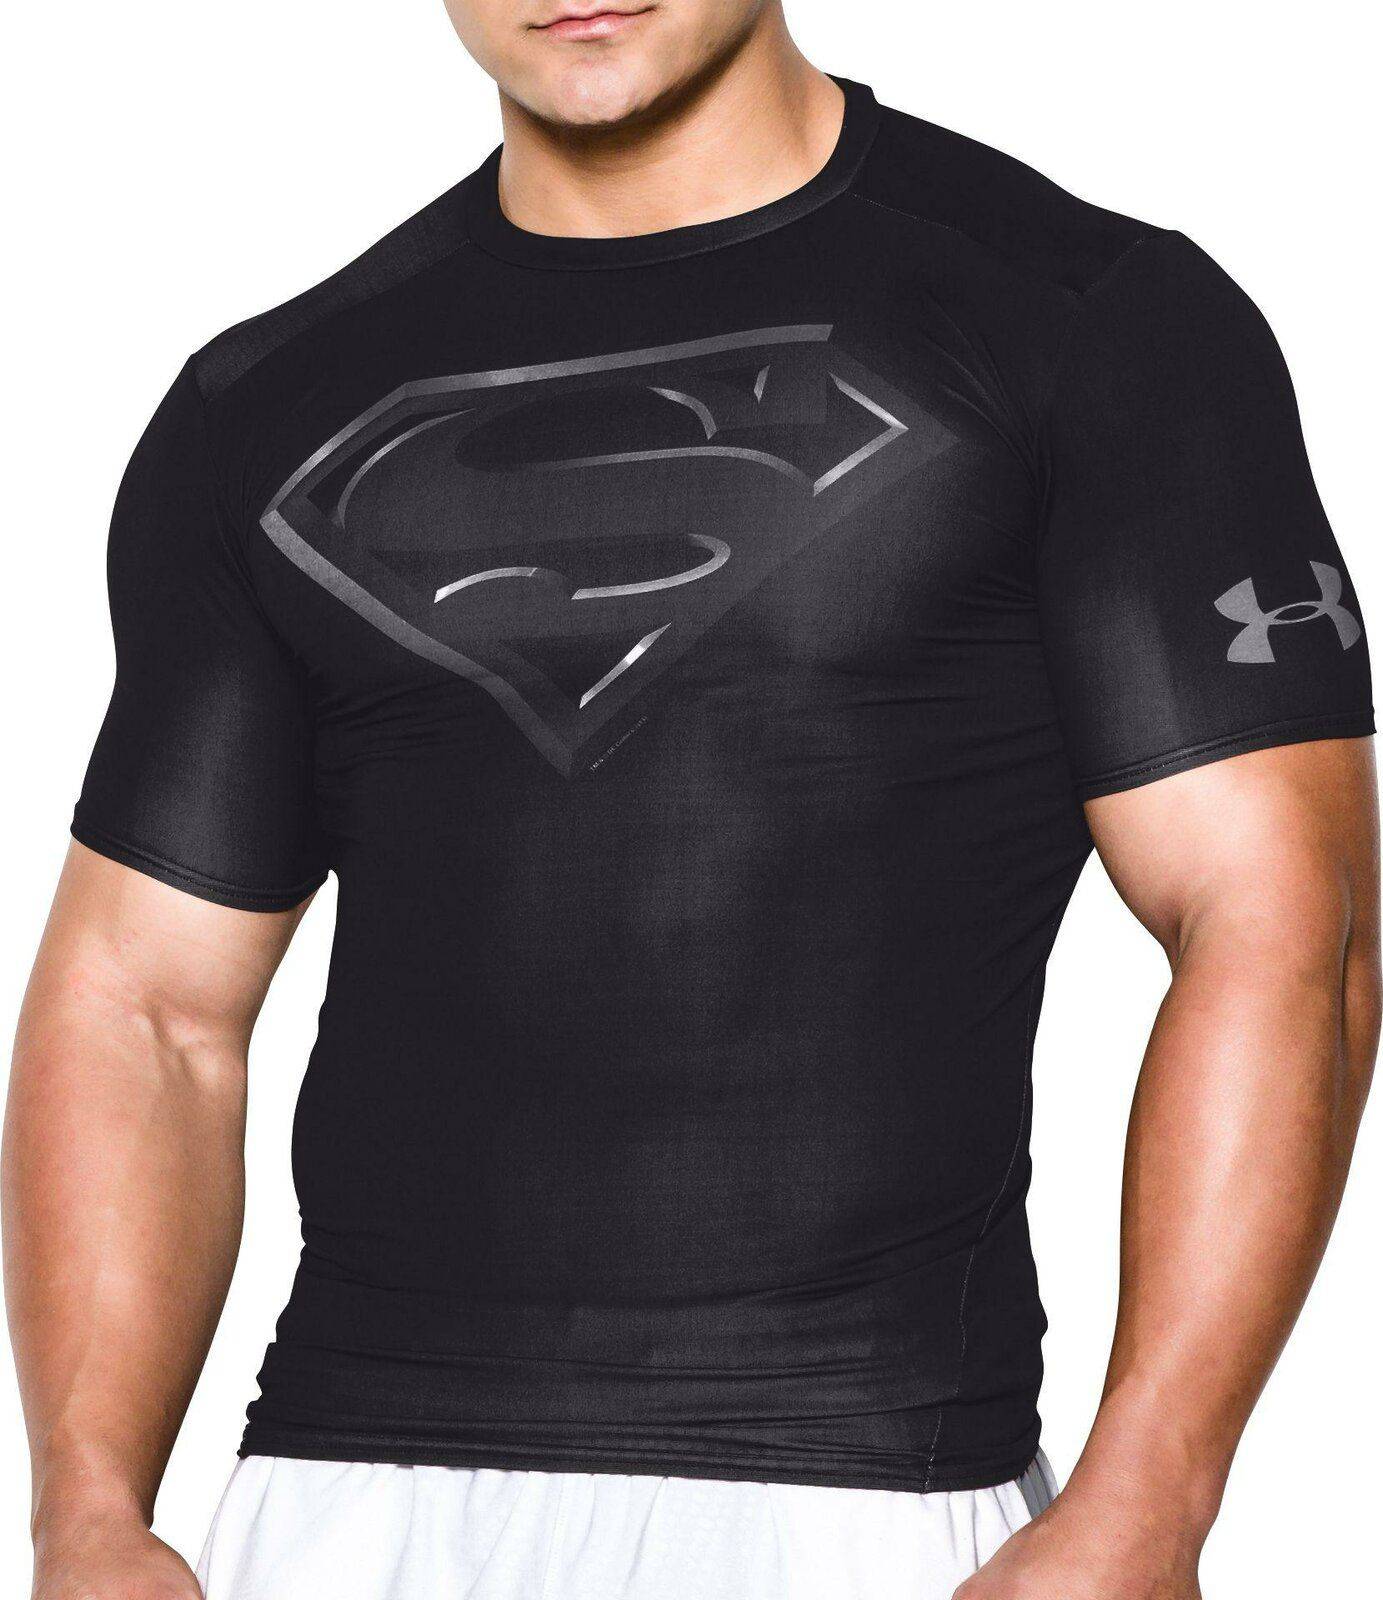 Camisetas Oficiales Under Compression Superheroes Descatalogadas Talla S. Relojes Especiales, EL foro de relojes